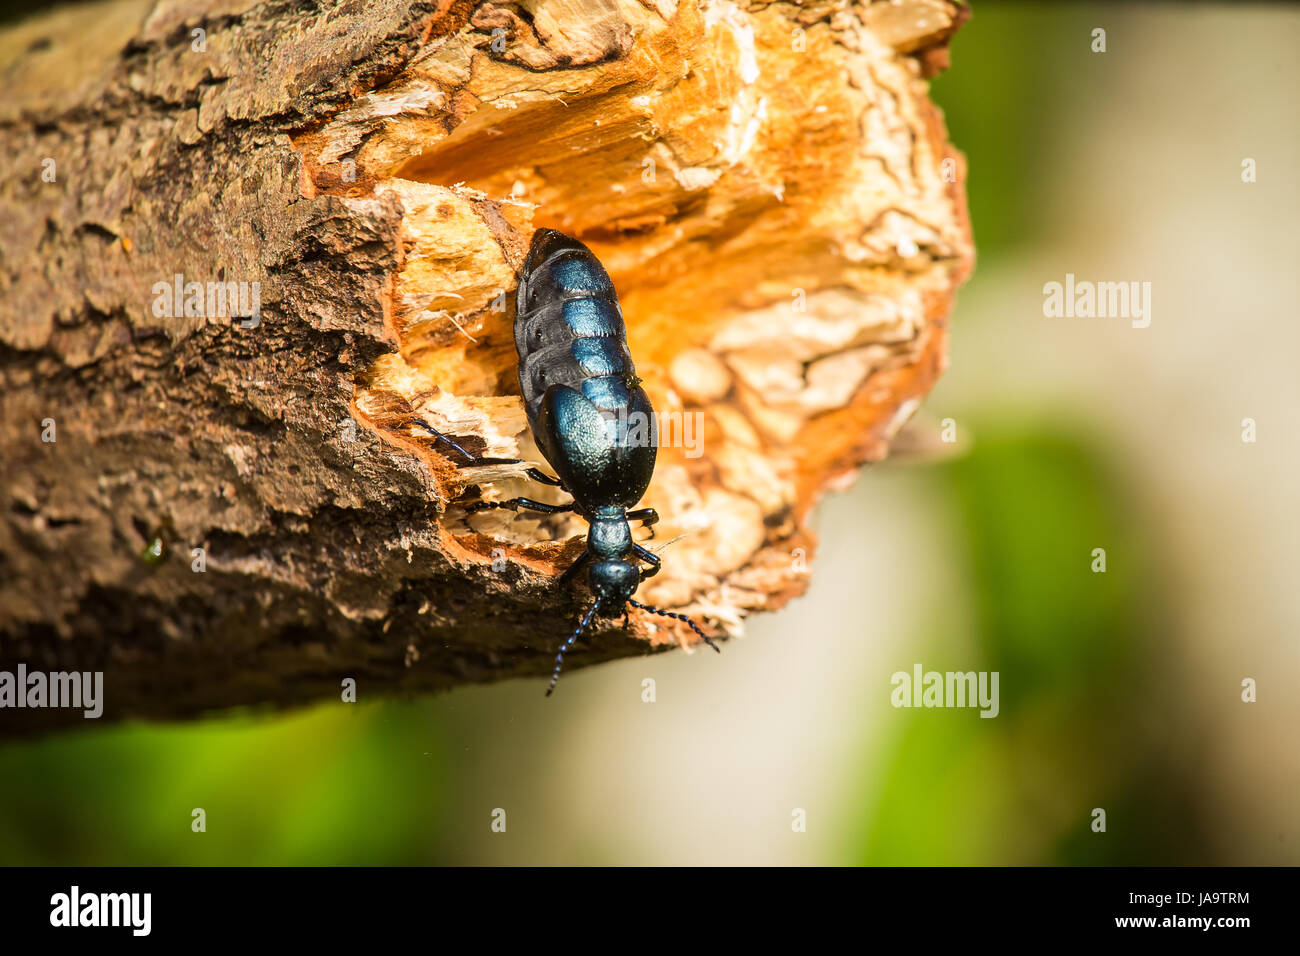 Eine schöne Nahaufnahme eines dunklen blauen Käfers auf einem Baumstamm im Sommer Wald Stockfoto